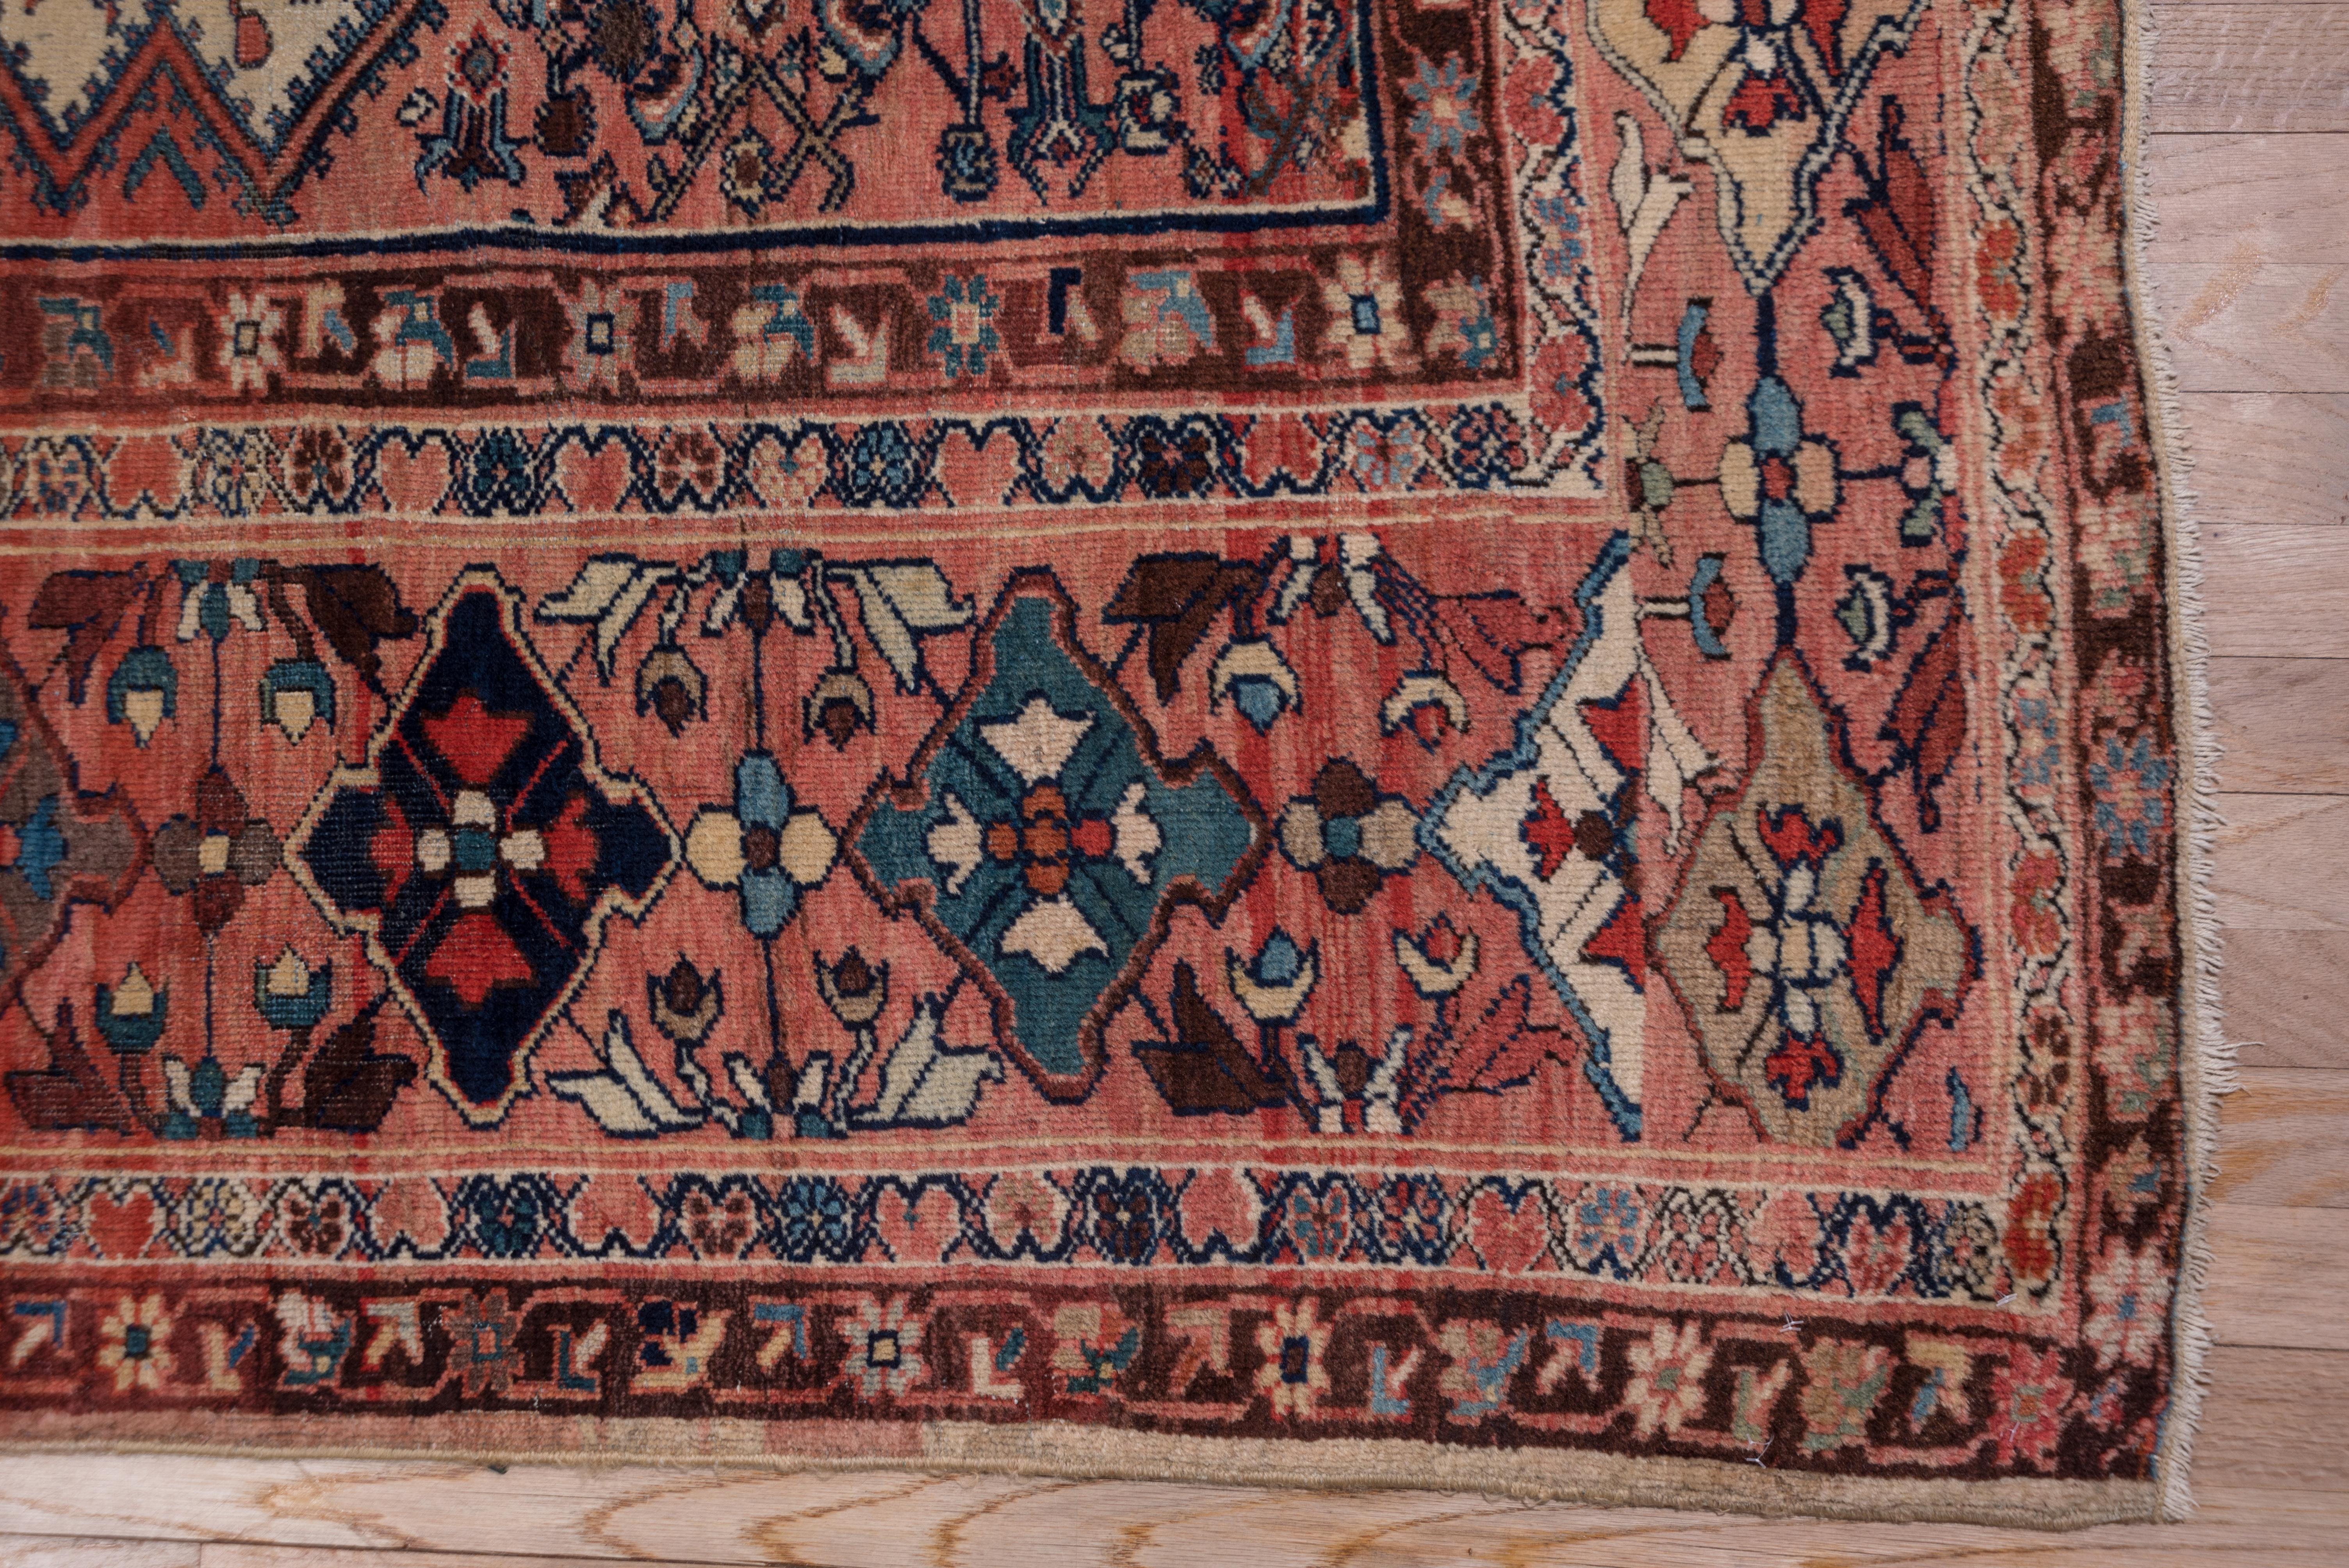 Ein sanftes rotes Rautenmedaillon mit gestuftem Umriss und Herati-Inhalt ist auf ein altes Elfenbeinfeld mit einem ebenfalls gestuften All-Over-Herati gesetzt. Die korallenfarbene, lachsfarbene Hauptbordüre zeigt gekerbte Rauten, die ein Blumenkreuz